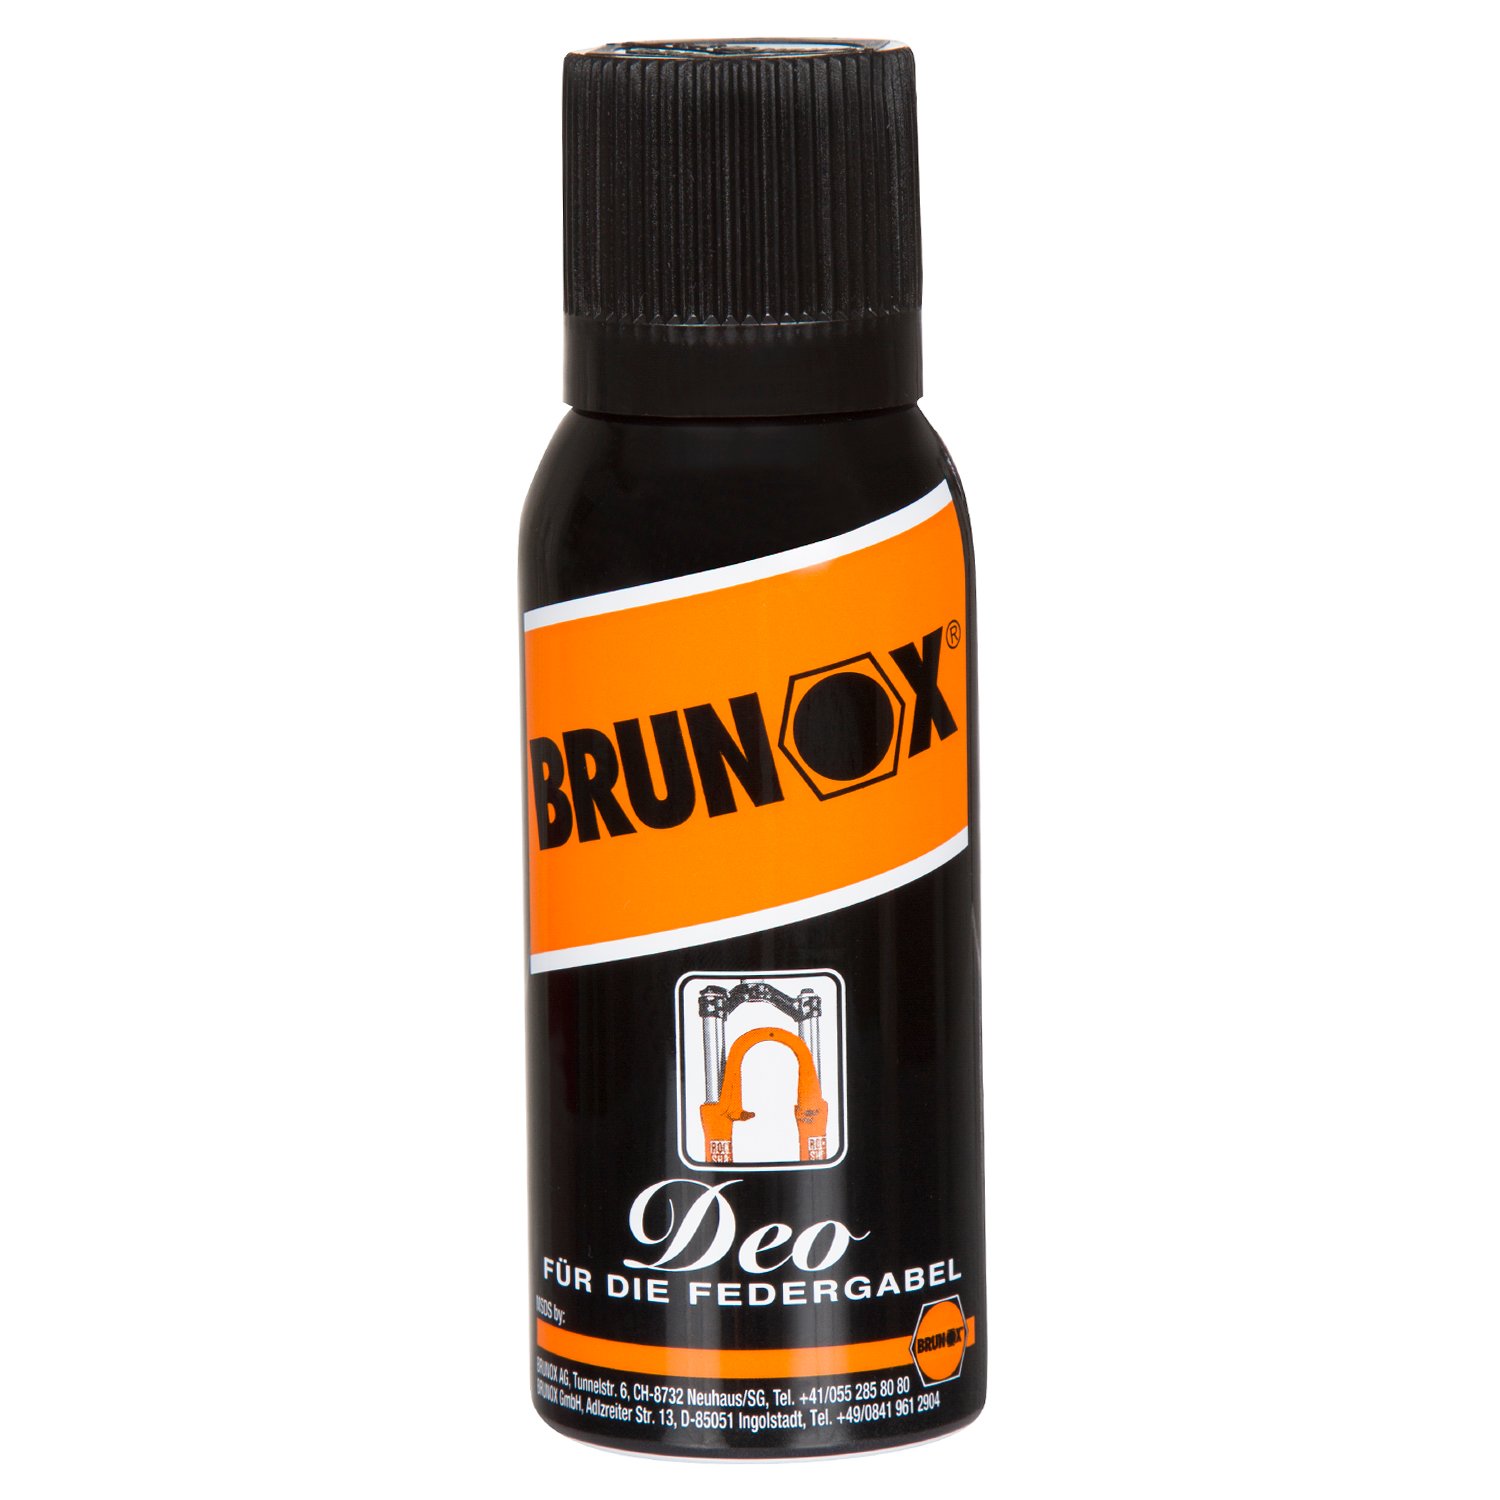 Brunox Bike Fork Spray Rock Shox Deo 100 ml